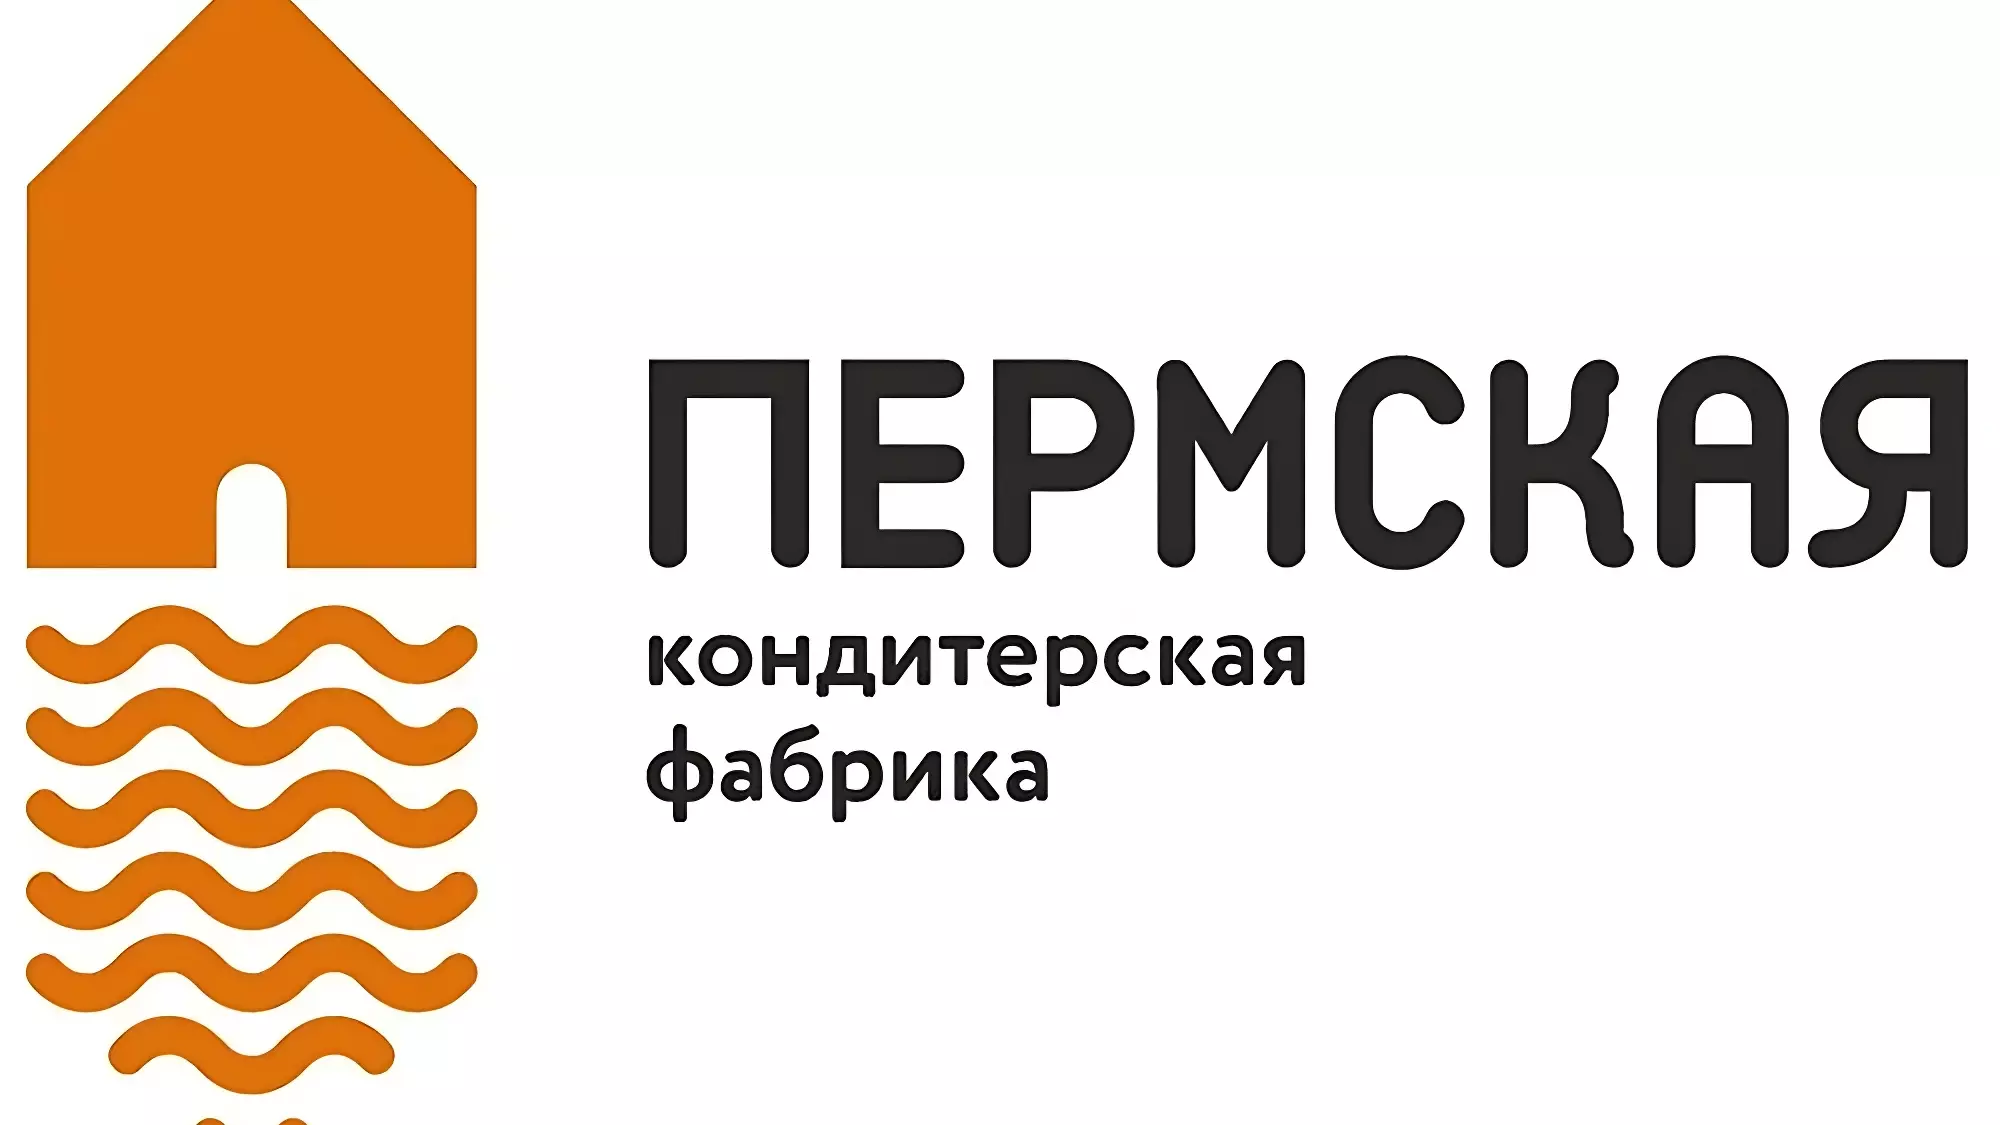 У Пермской кондитерской фабрики сменится логотип